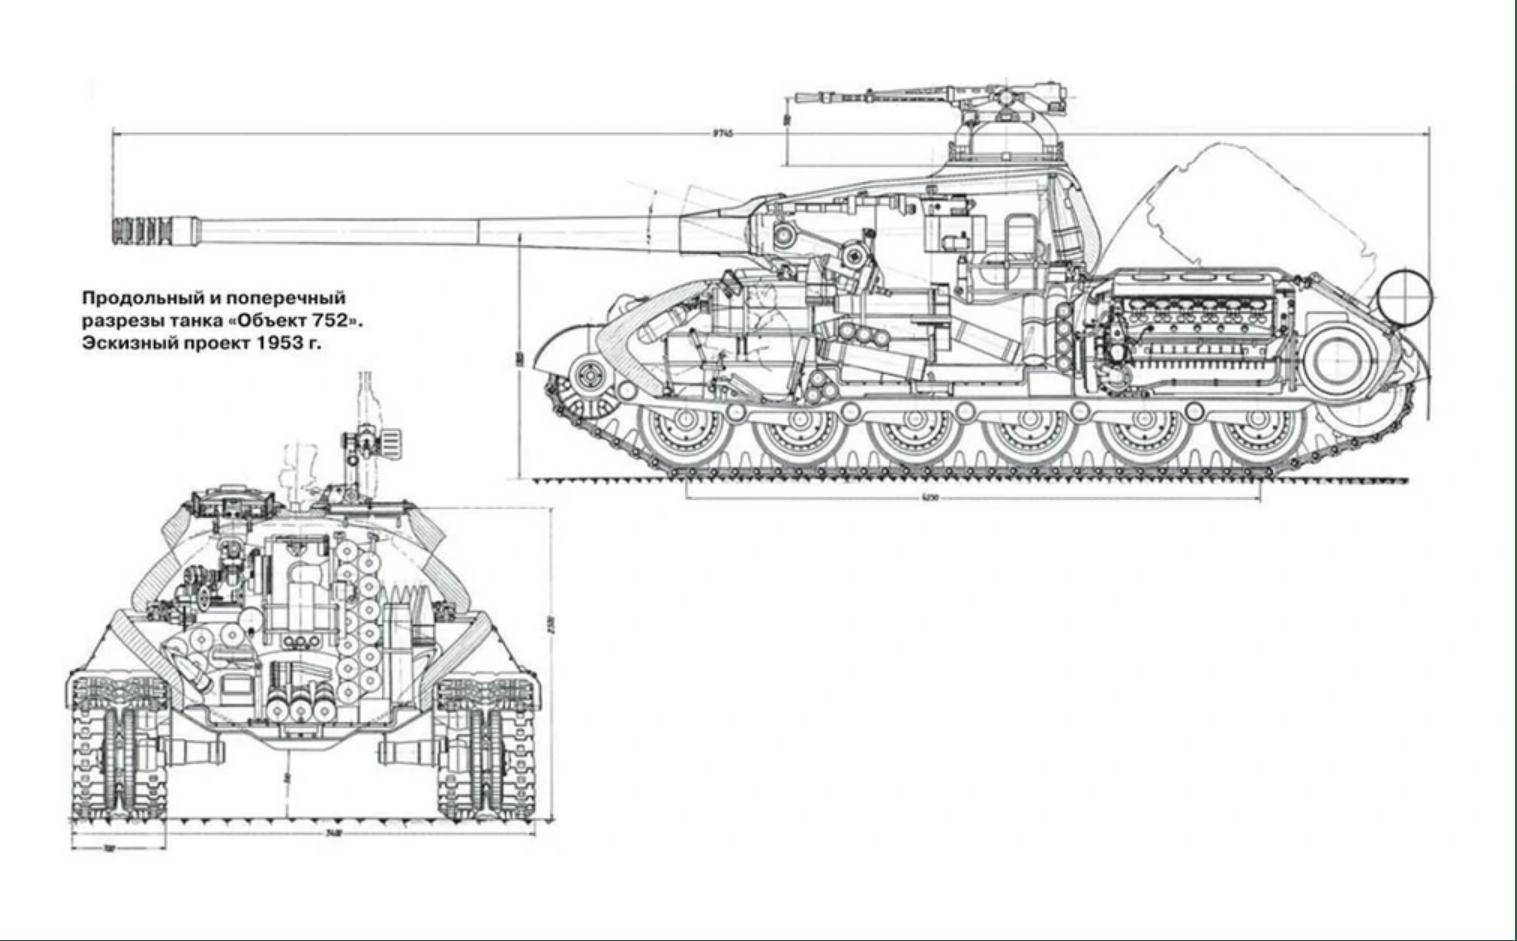 Тяжелый советский танк ис-6: обзор, характеристики, история